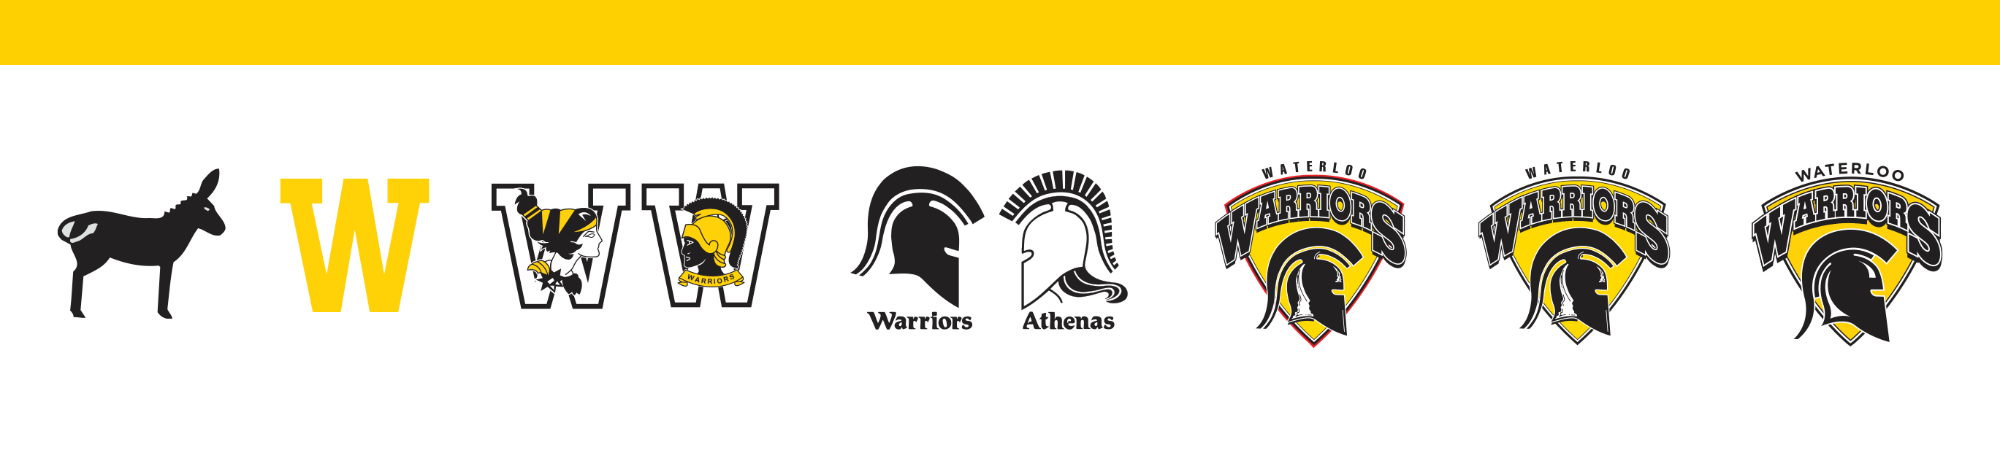 History - Warrior Logos